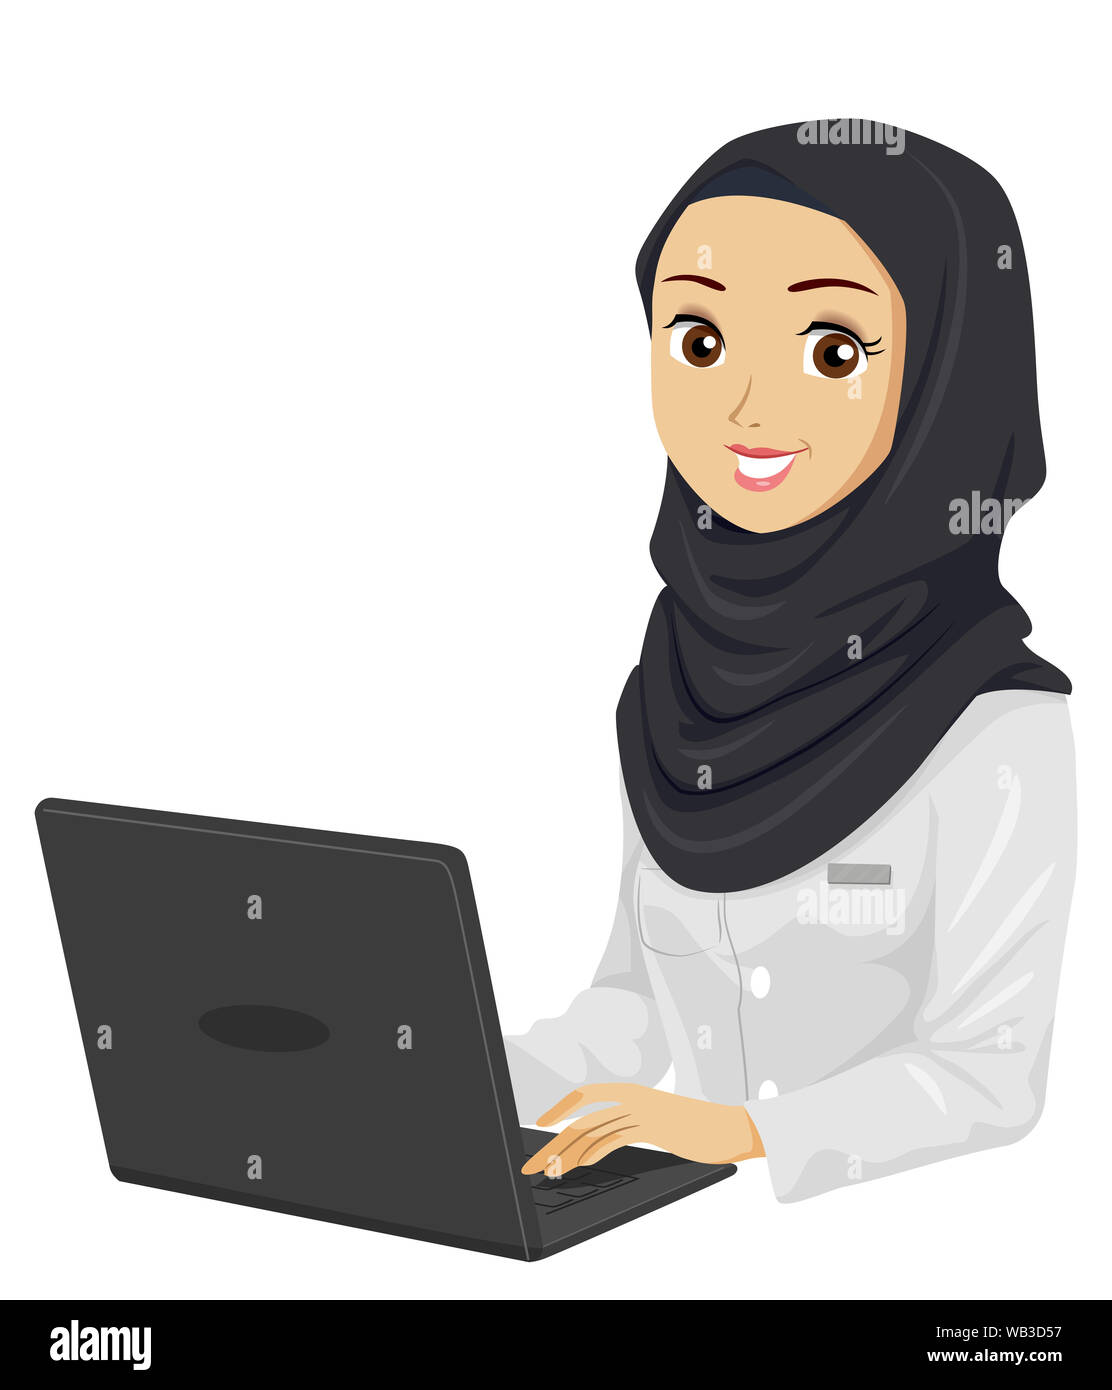 Illustrazione di un musulmano ragazza adolescente studente utilizzando un laptop che indossa bianco camici da laboratorio Foto Stock